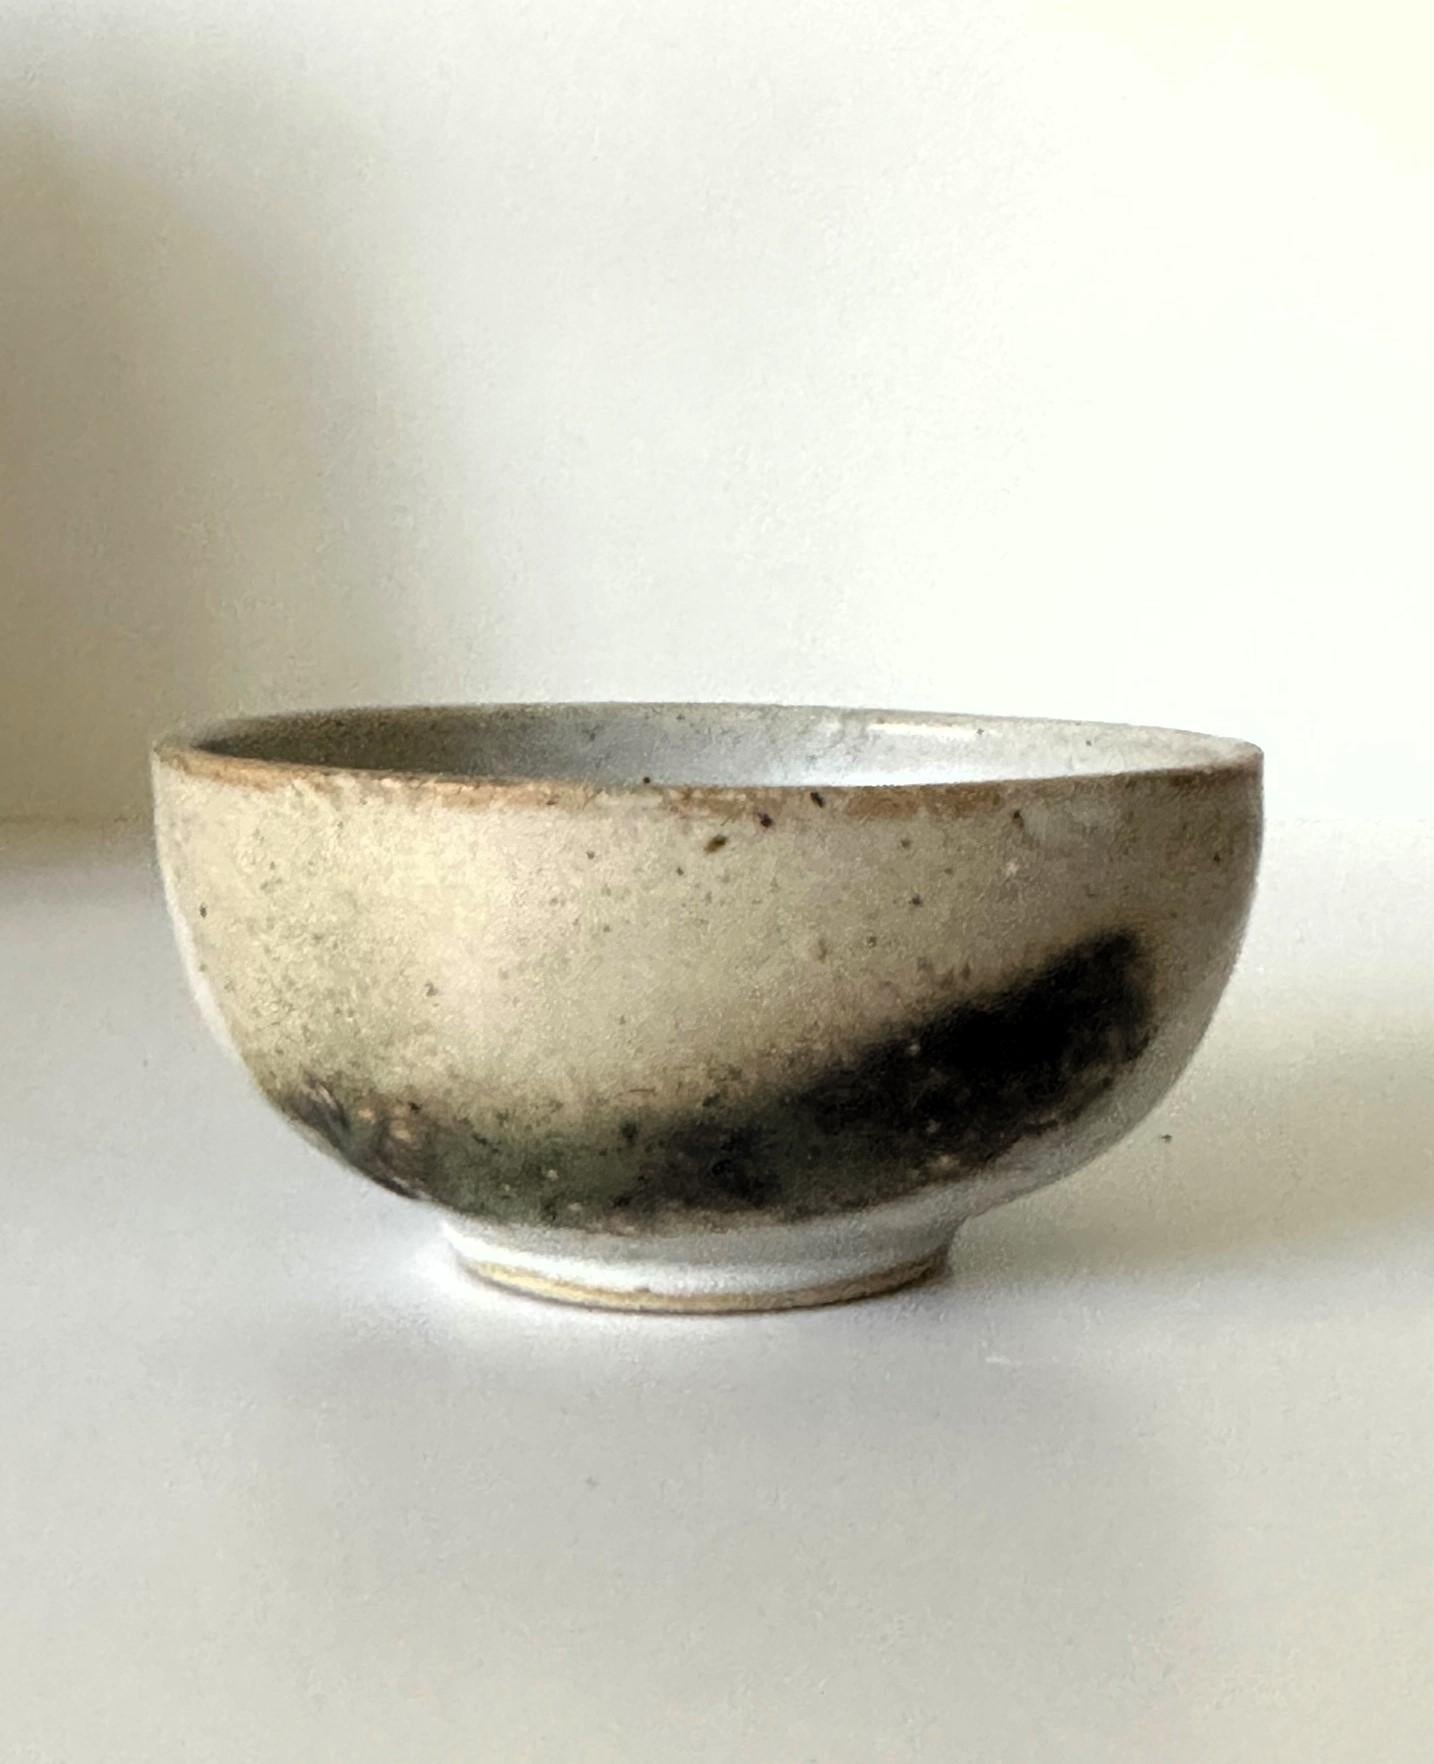 Un petit bol à thé élégant en céramique émaillée (chawan) de l'artiste américano-japonaise Toshiko Takaezu (américaine, 1922 - 2011). La forme équilibrée est construite à la main et présente une légère irrégularité. La surface est recouverte d'une